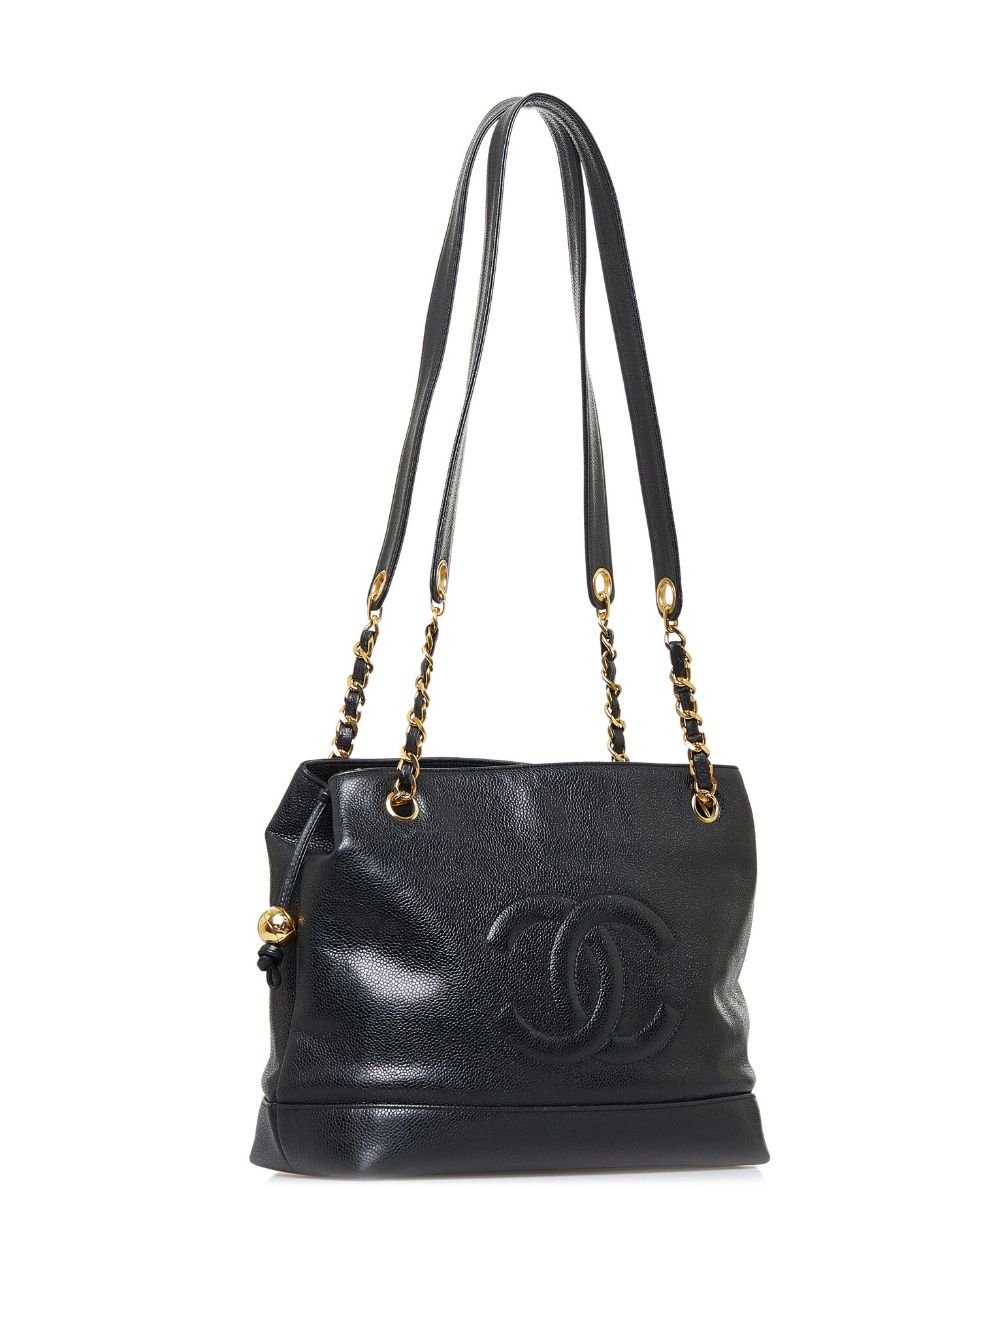 CHANEL CC Black Caviar Skin Leather Shoulder Bag Tote bag Handbag